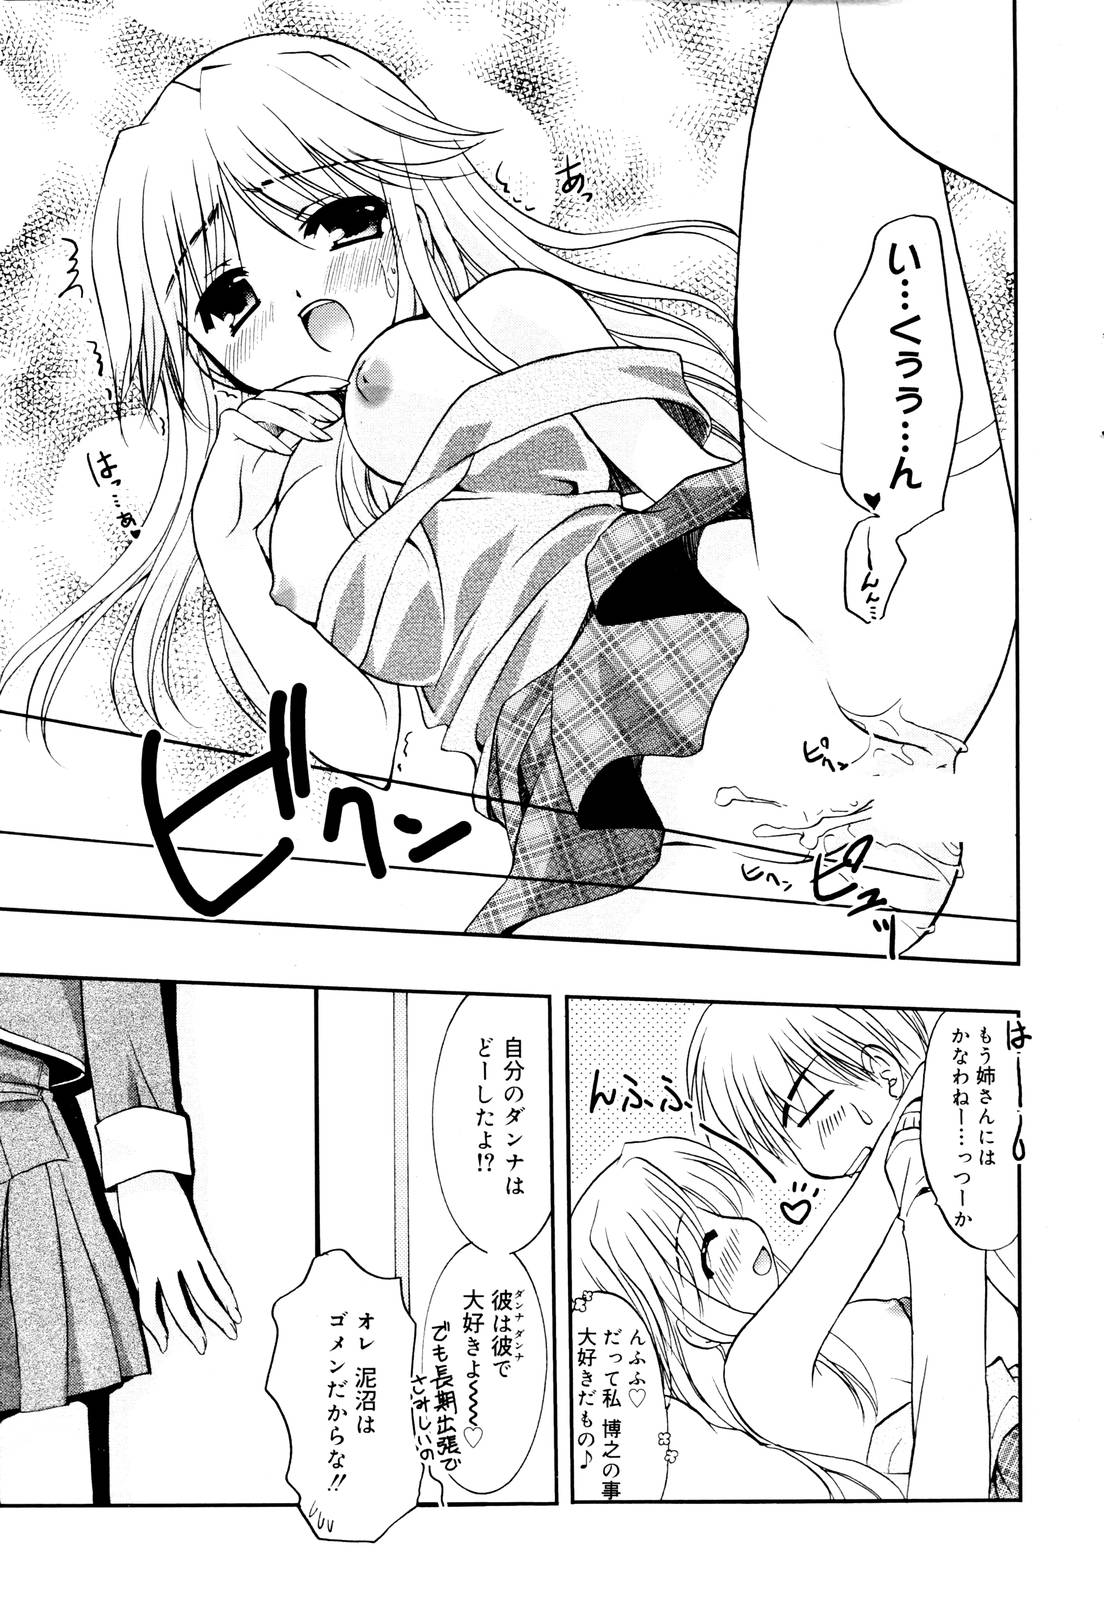 Manga Bangaichi 2006-01 page 37 full